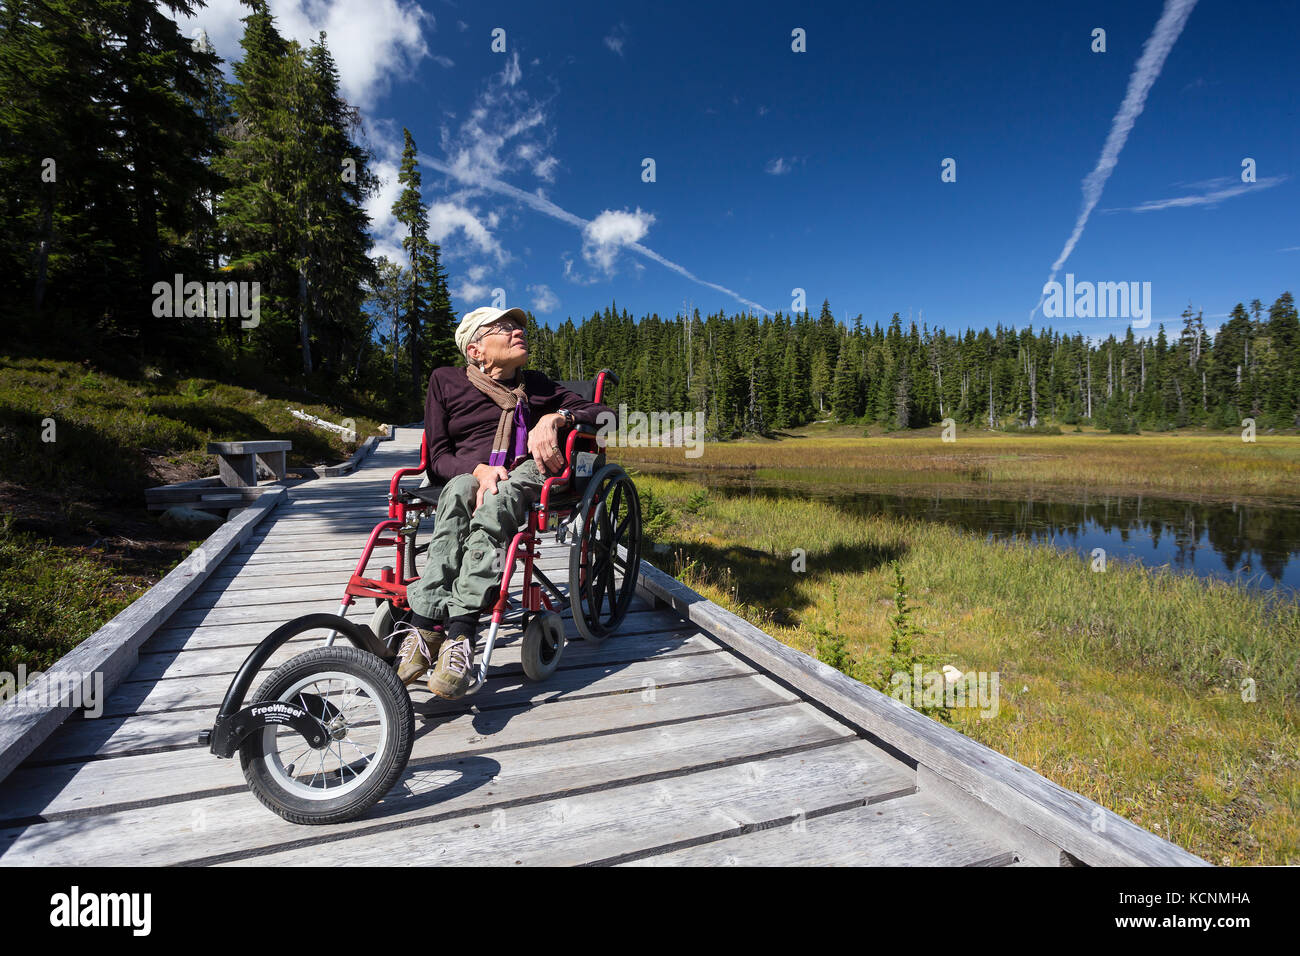 Pasarelas en el paraíso prados proporcionan accesibilidad para personas discapacitadas que desean también para disfrutar del aire libre, Mt Washington, el Comox Valley, Vancouver Island, British Columbia, Canadá Foto de stock